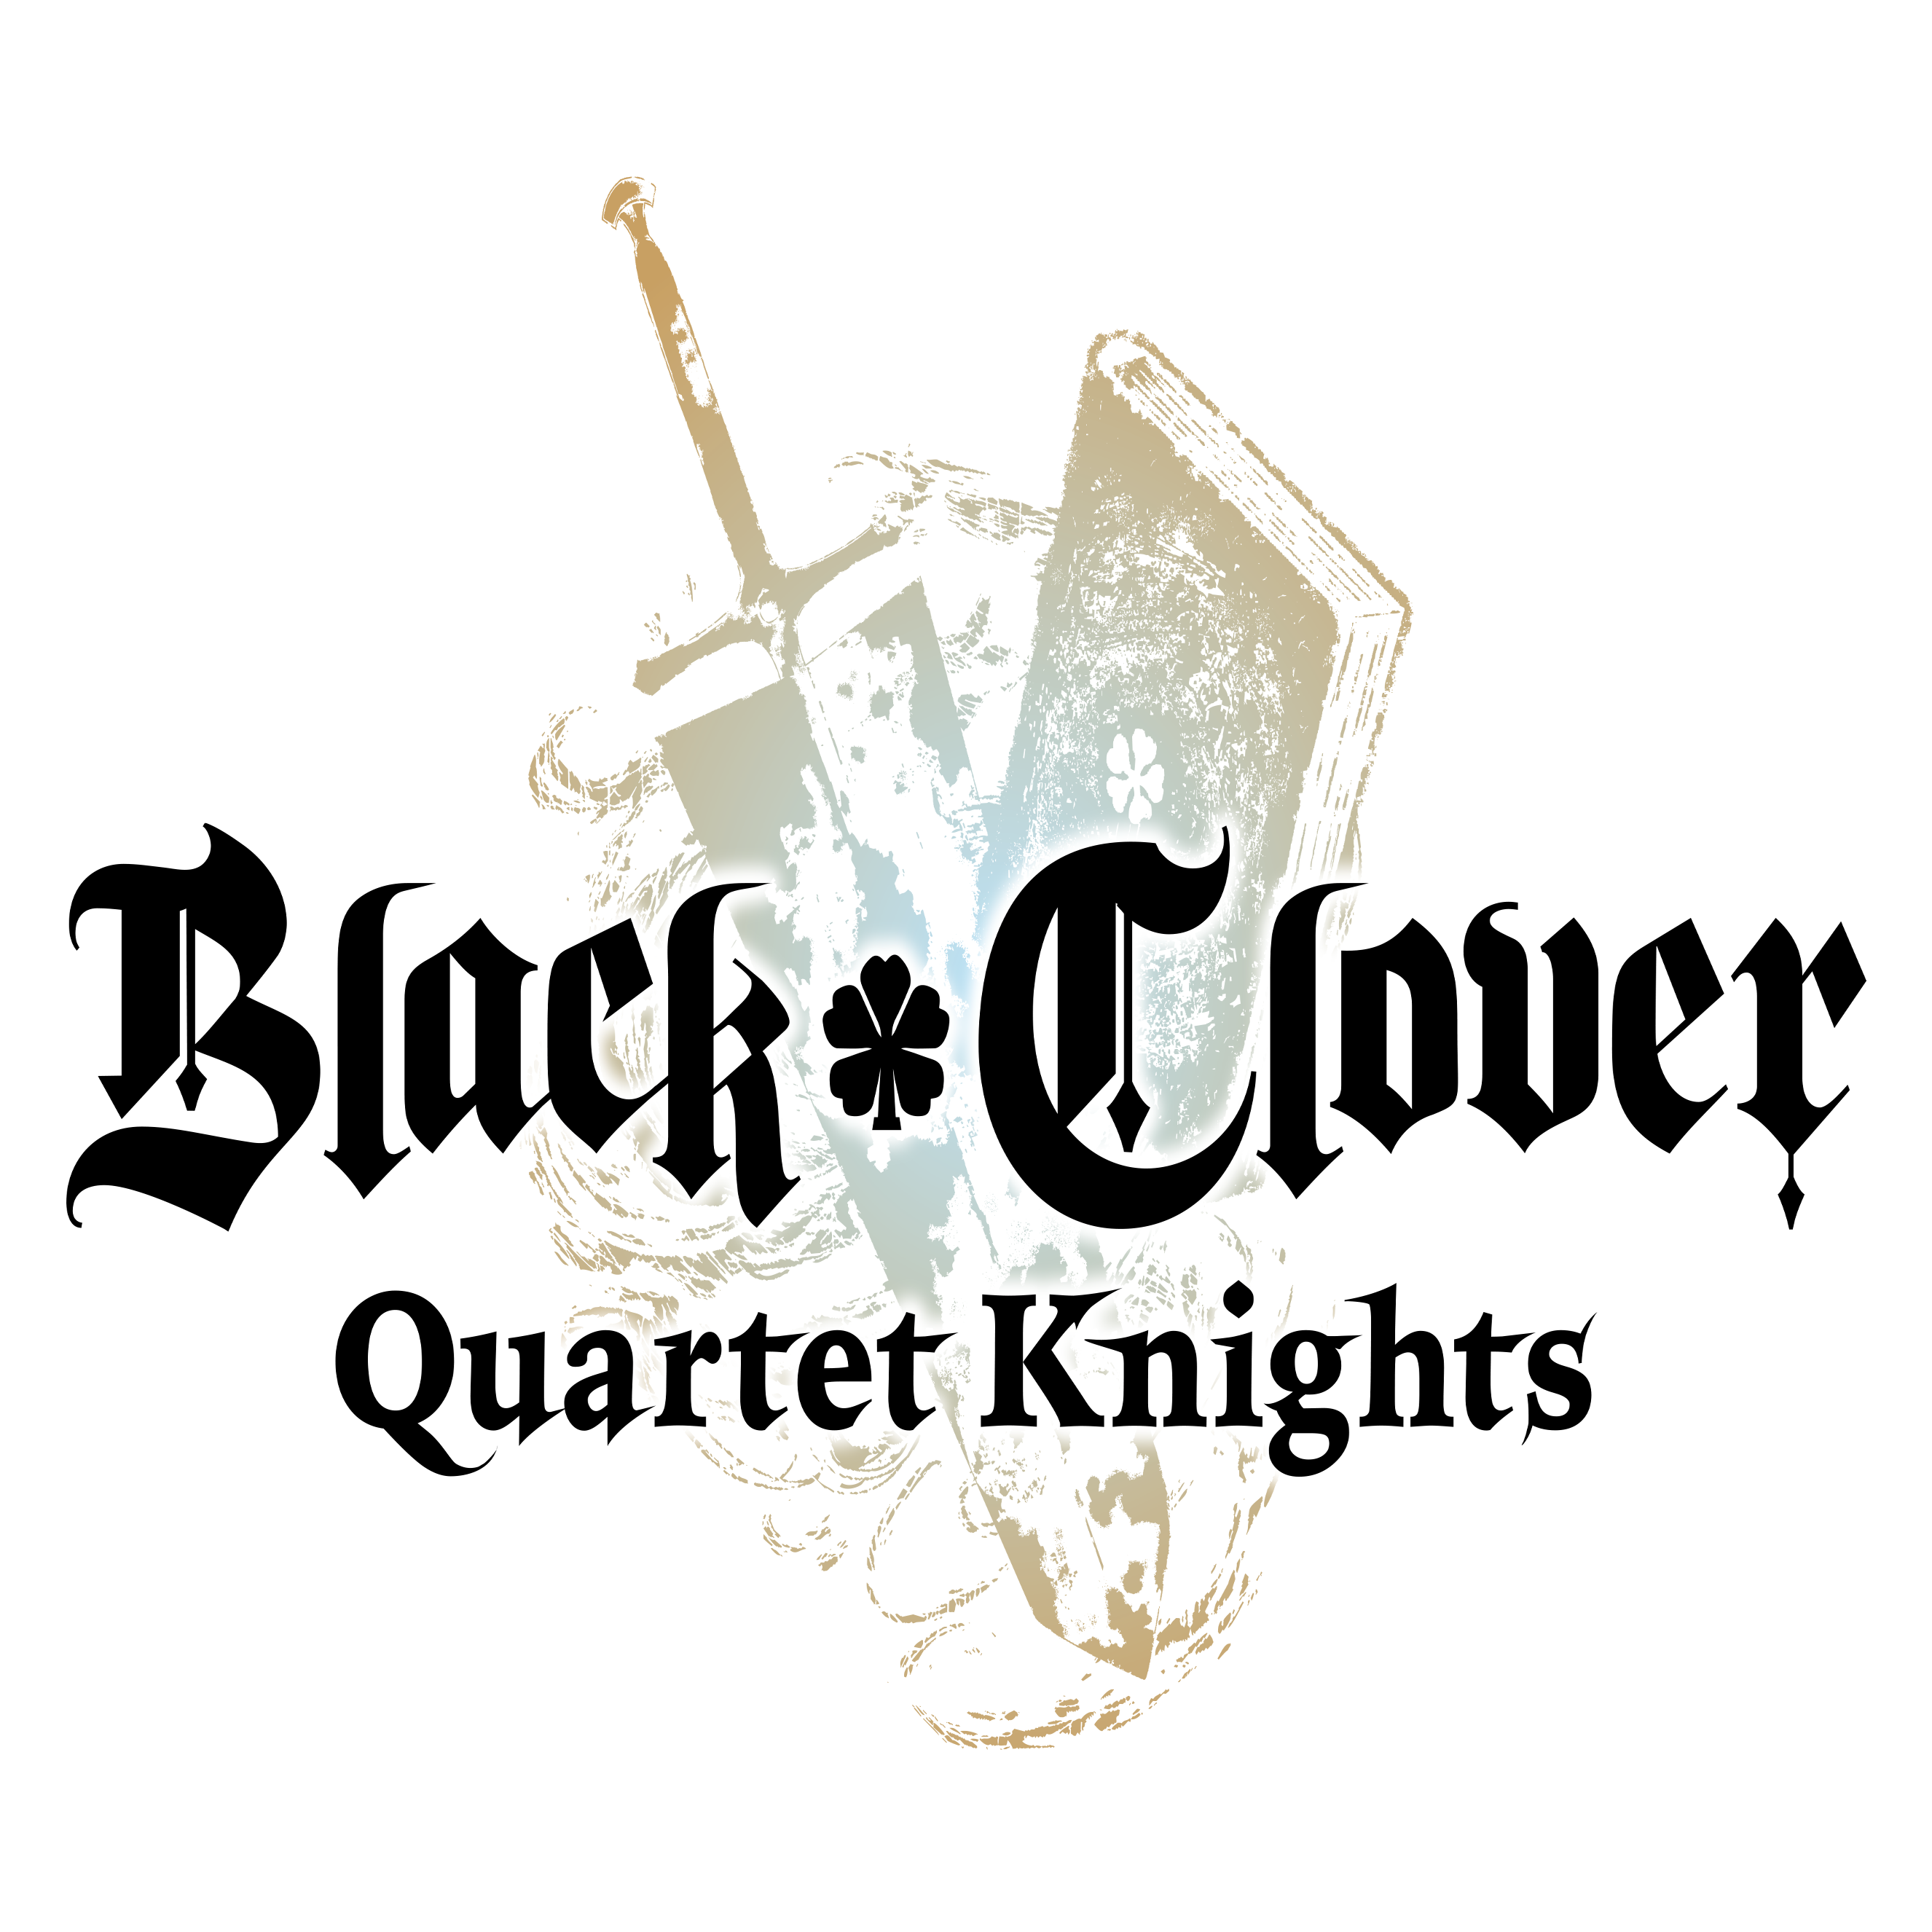 Open bta voor Black Clover Quartet Knights aangekondigd